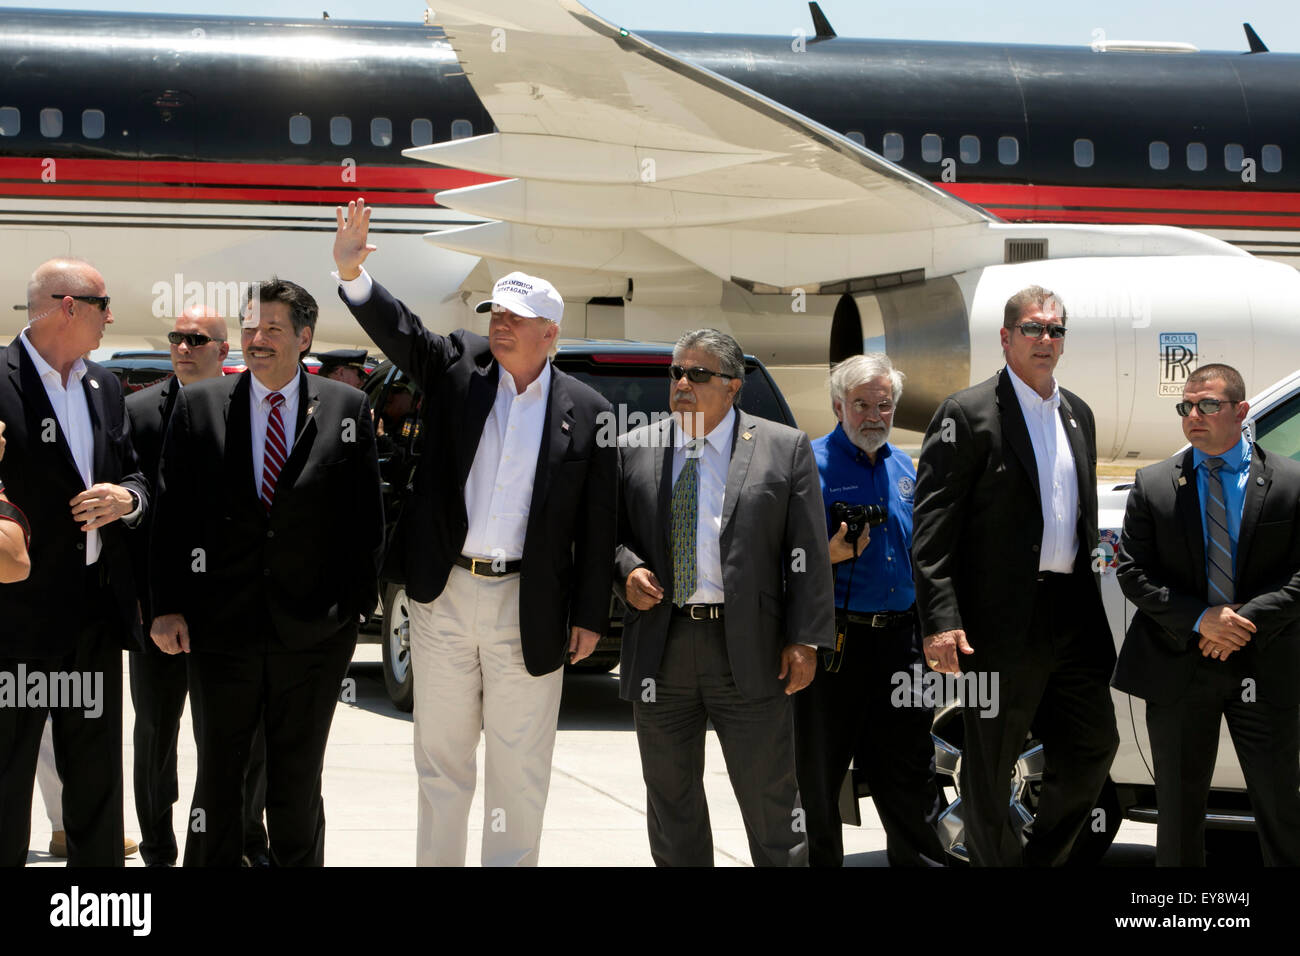 El candidato presidencial estadounidense Donald Trump las olas a los seguidores con el grupo local de Laredo, Texas, dignatarios después de aterrizar su avión privado en el aeropuerto el 23 de julio, 2015 Foto de stock